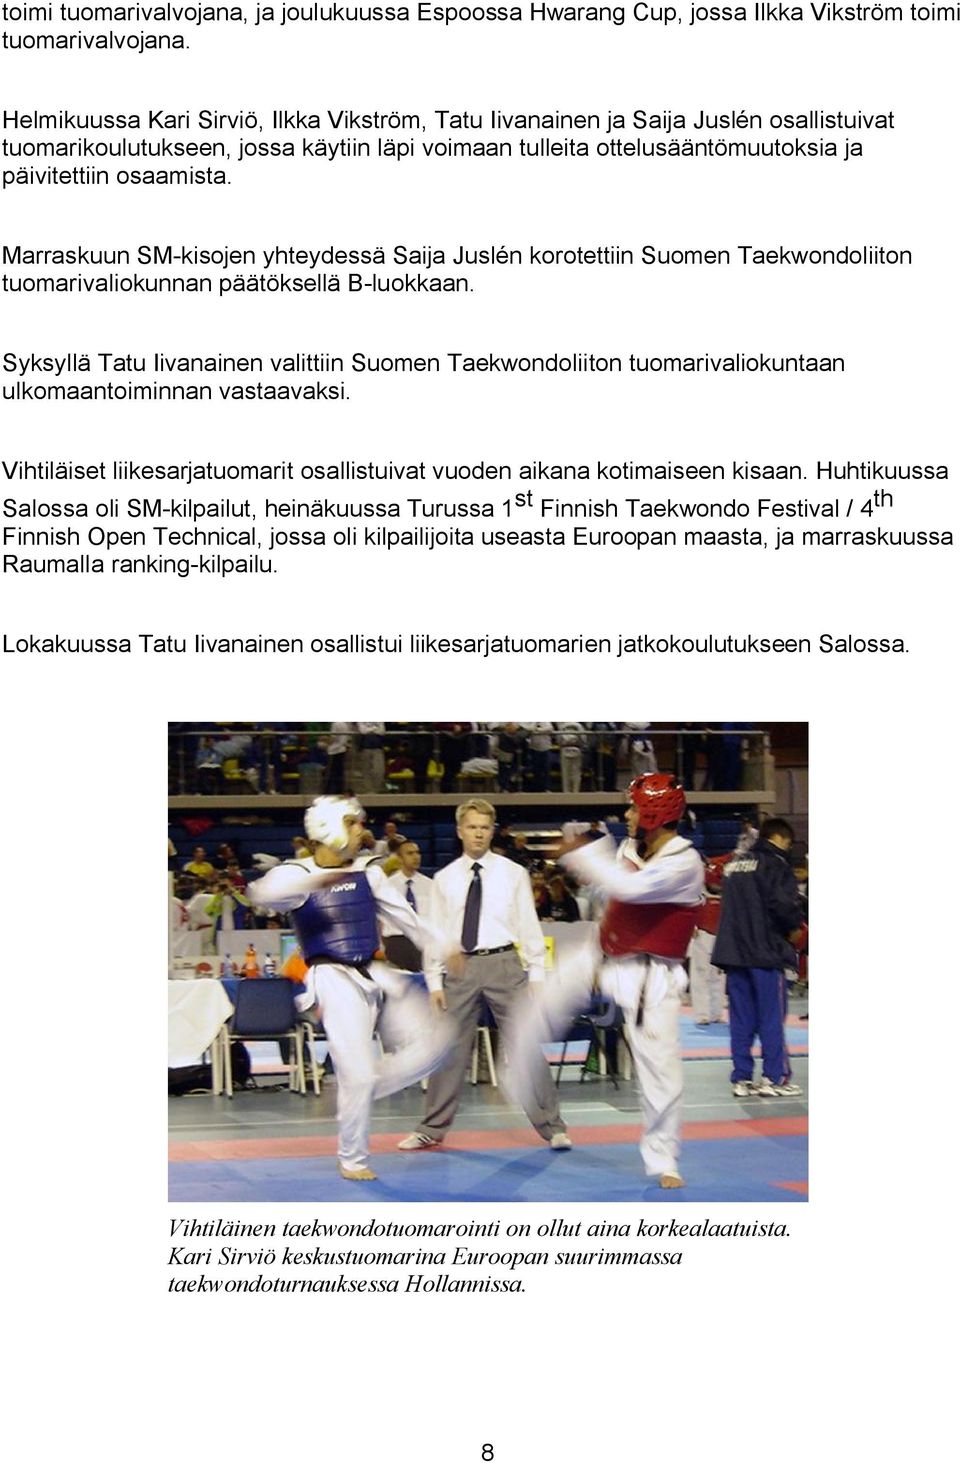 Marraskuun SM-kisojen yhteydessä Saija Juslén korotettiin Suomen Taekwondoliiton tuomarivaliokunnan päätöksellä B-luokkaan.